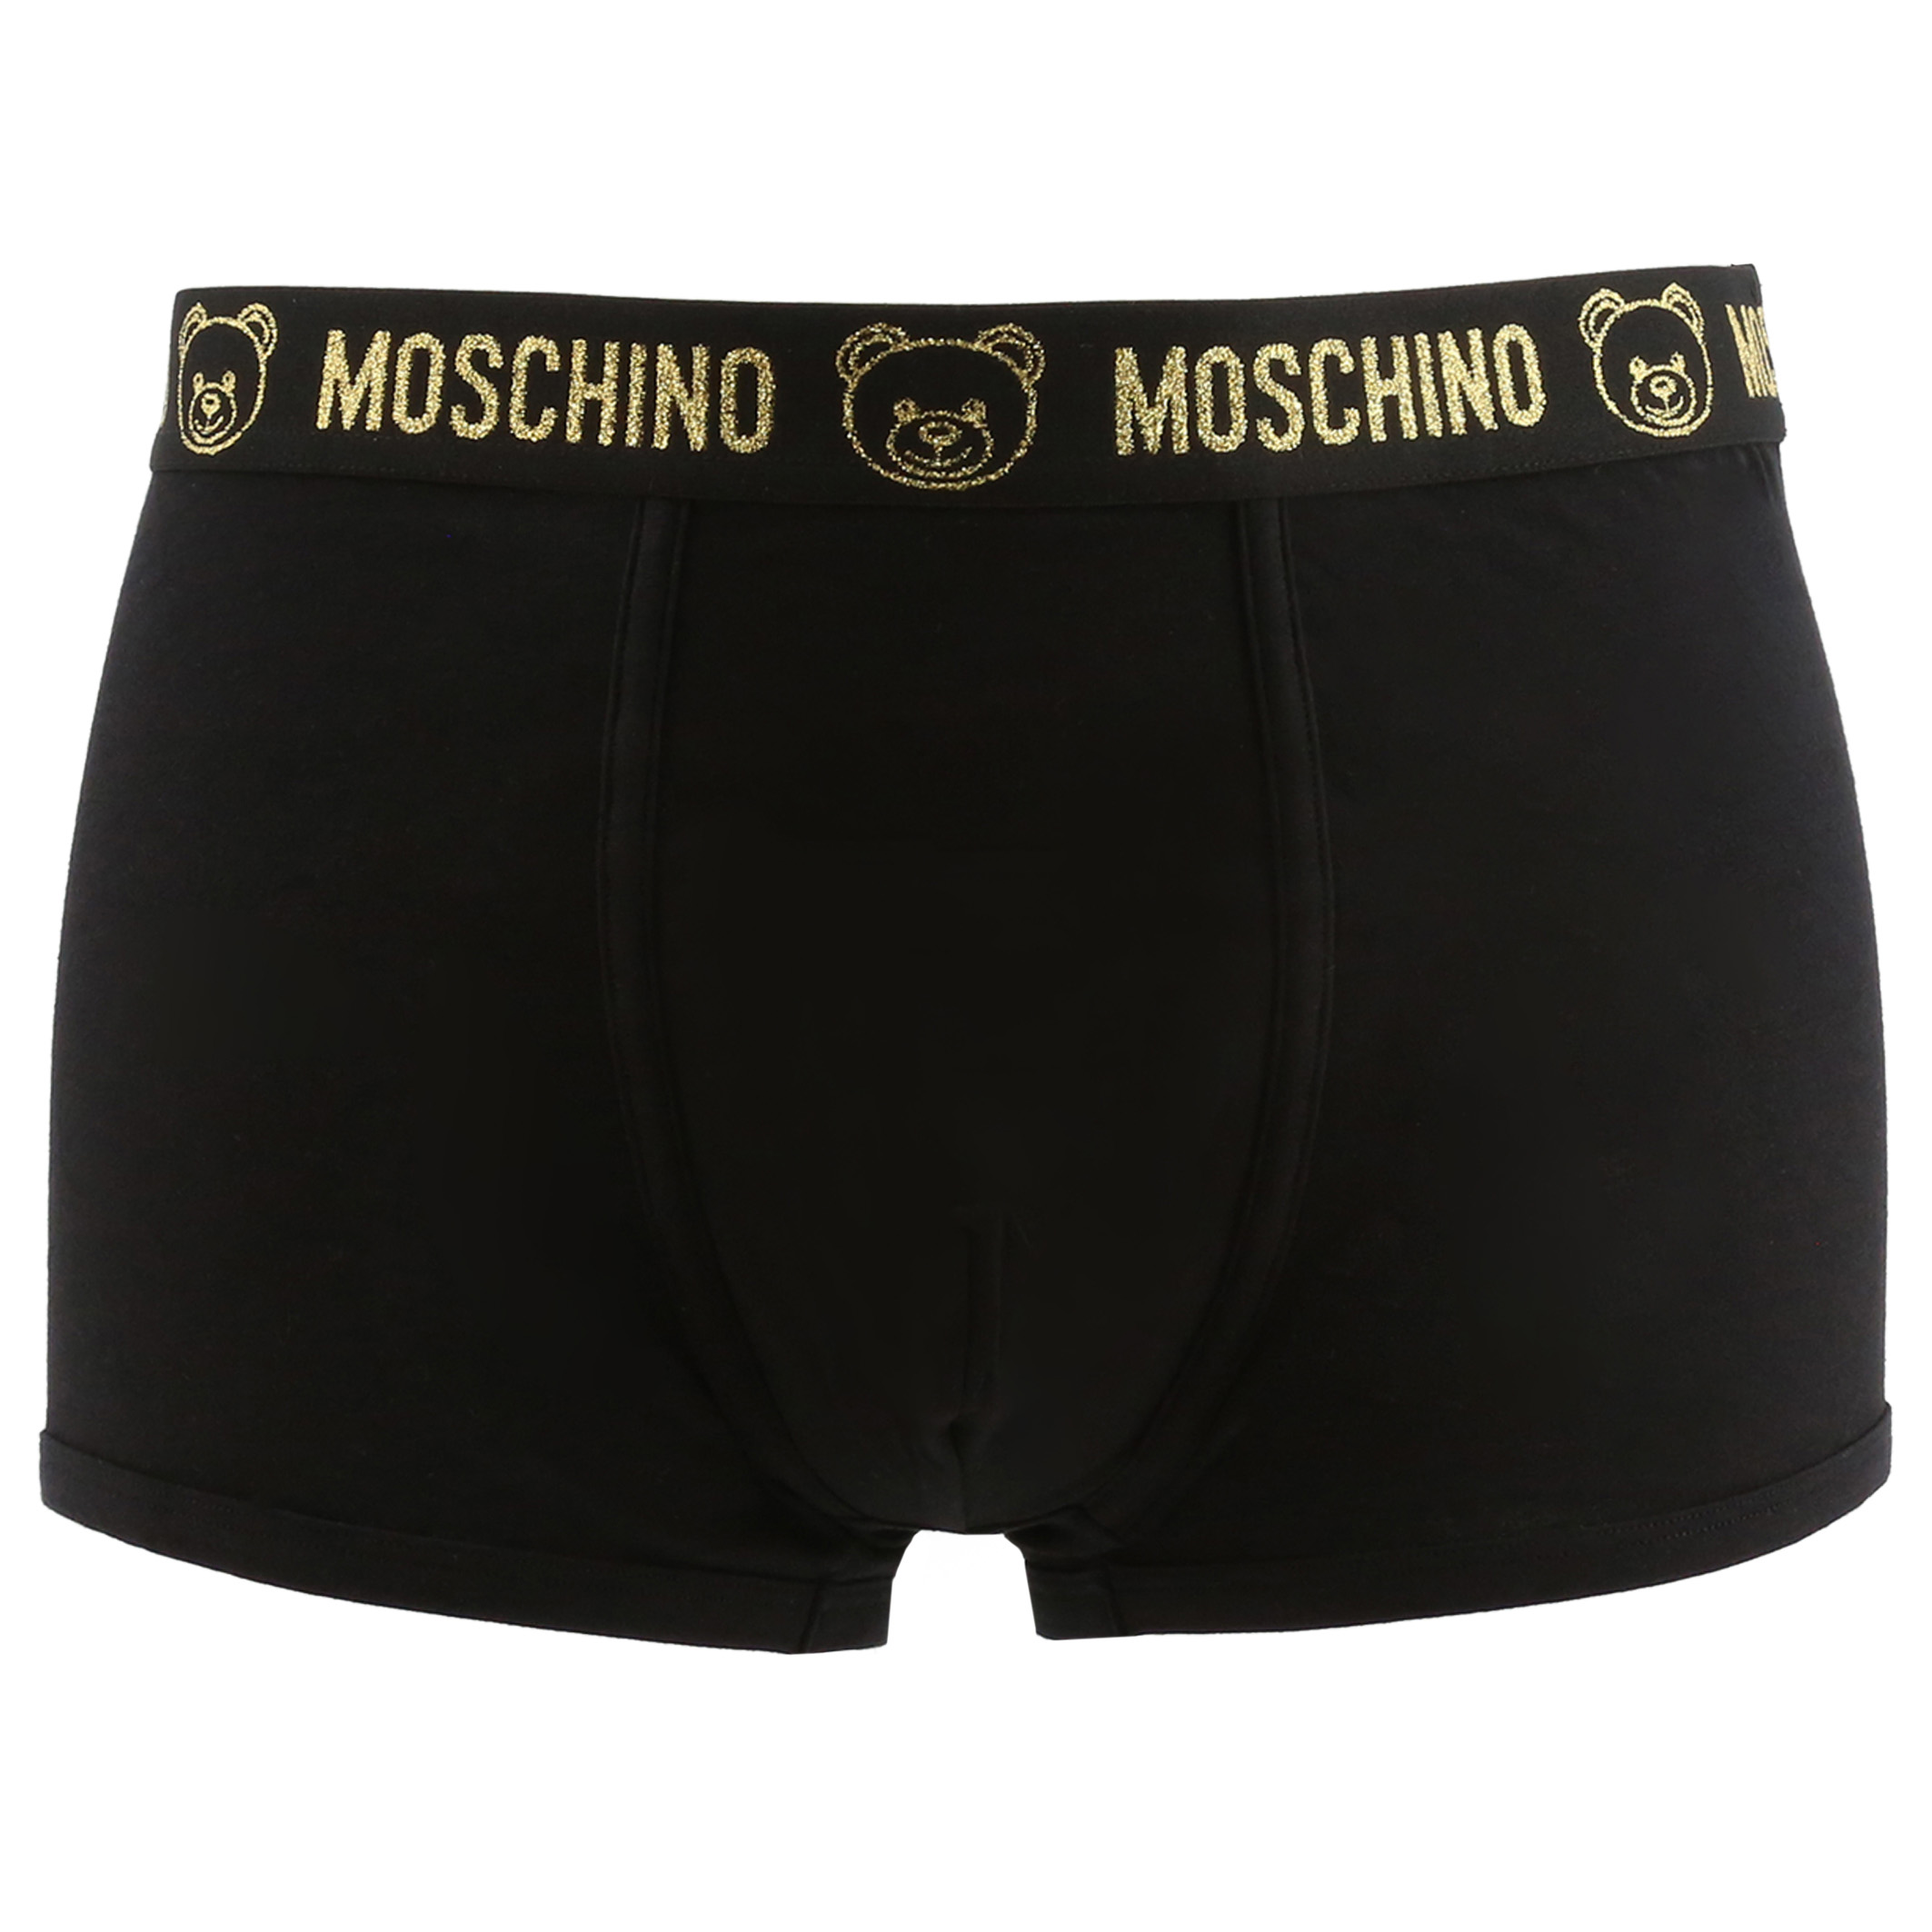 Moschino Black Underwear for Men - 2102-8119